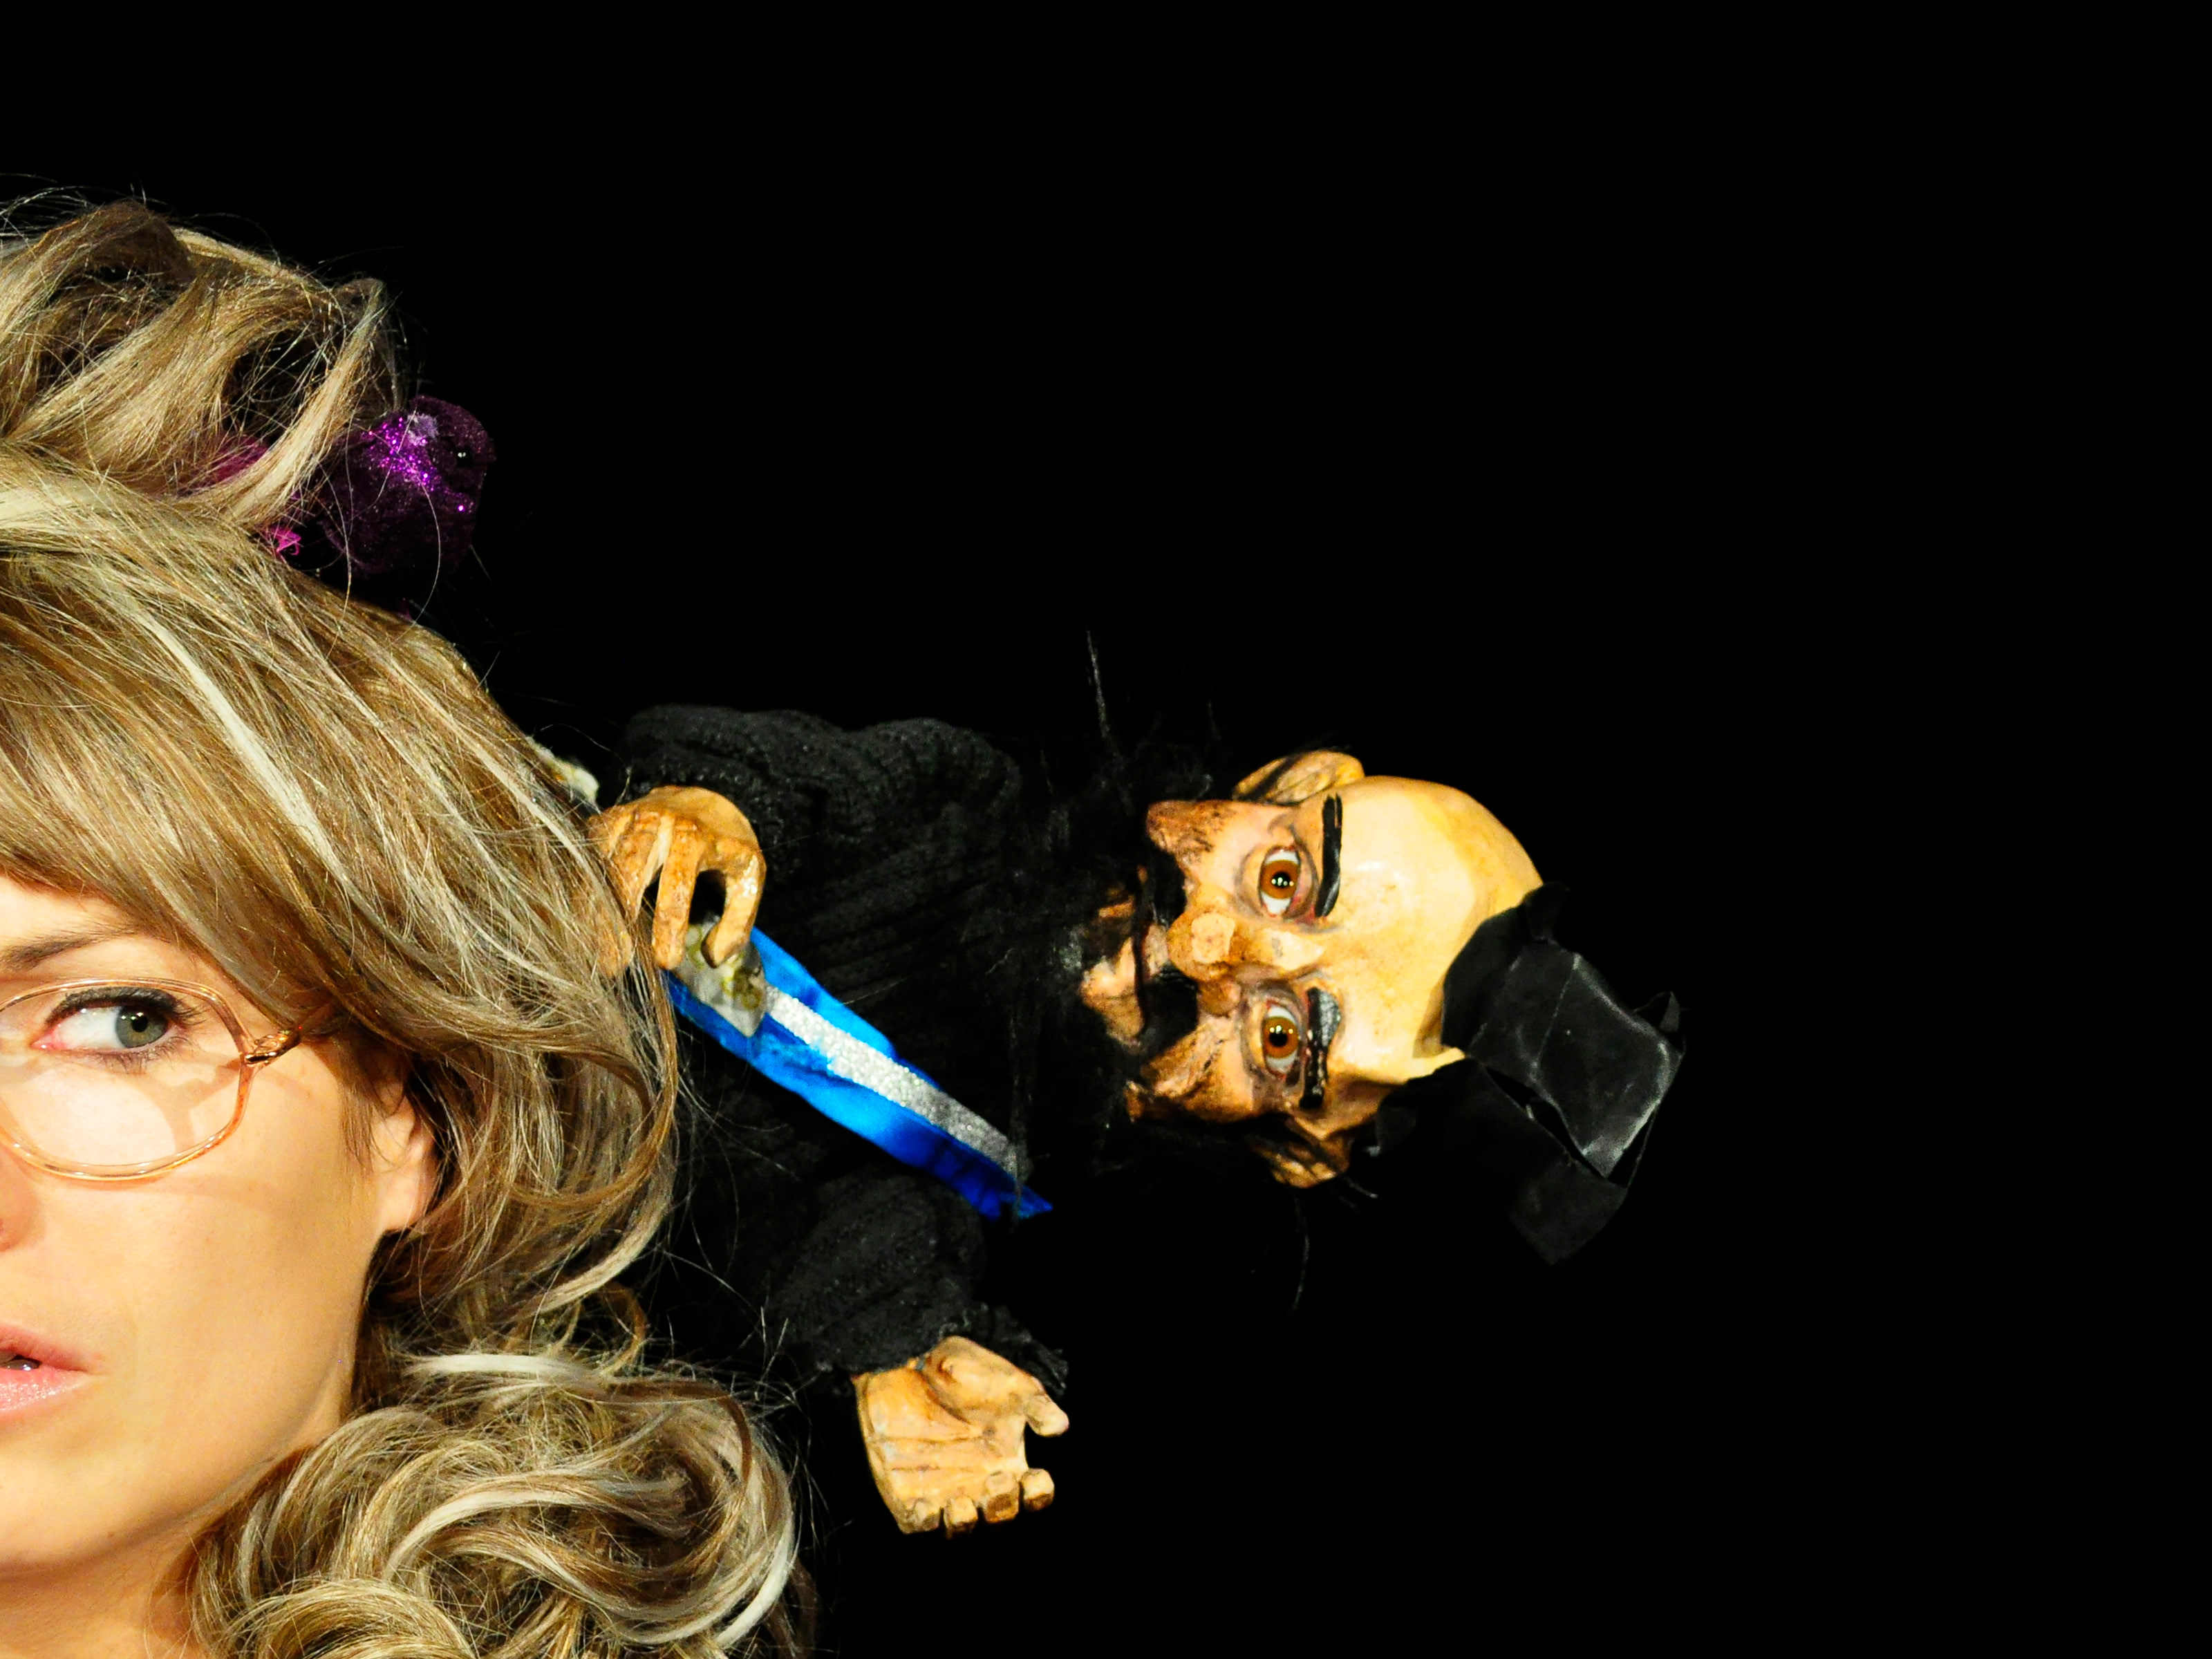 Das Gesicht einer mittelalten Frau mit blonder Perrücke und randloser Brille ist halb angeschnitten. Auf ihrem Kopf sitzt die Puppe eines dunkel gekleideten Mannes mit Zylinder und Bart.